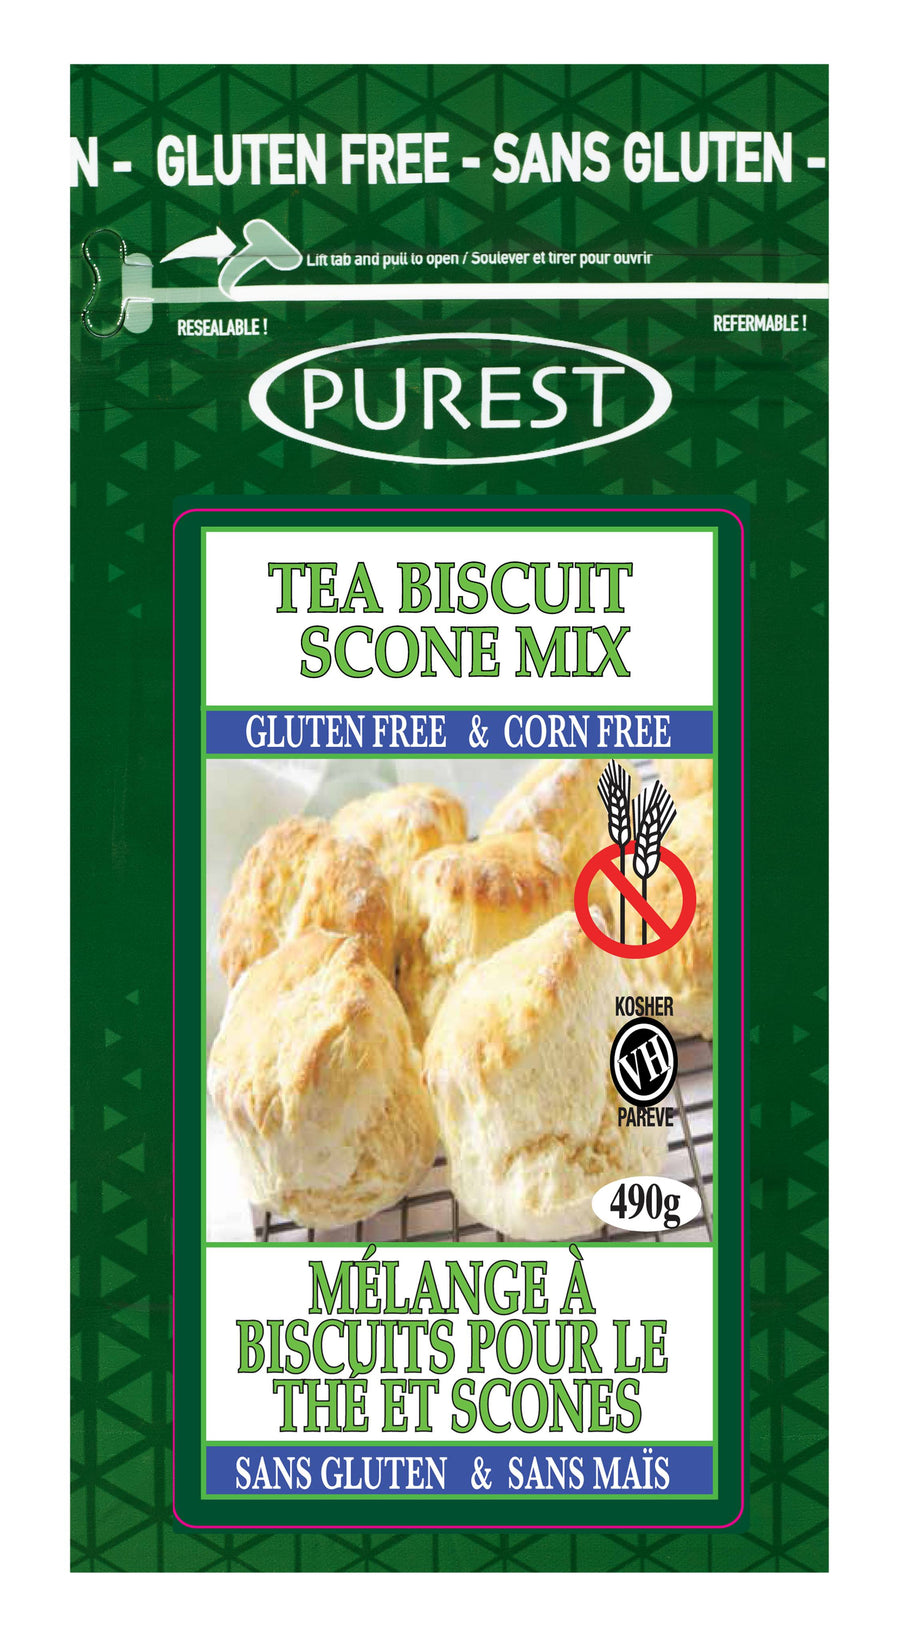 Tea Biscuit & Scone Mix